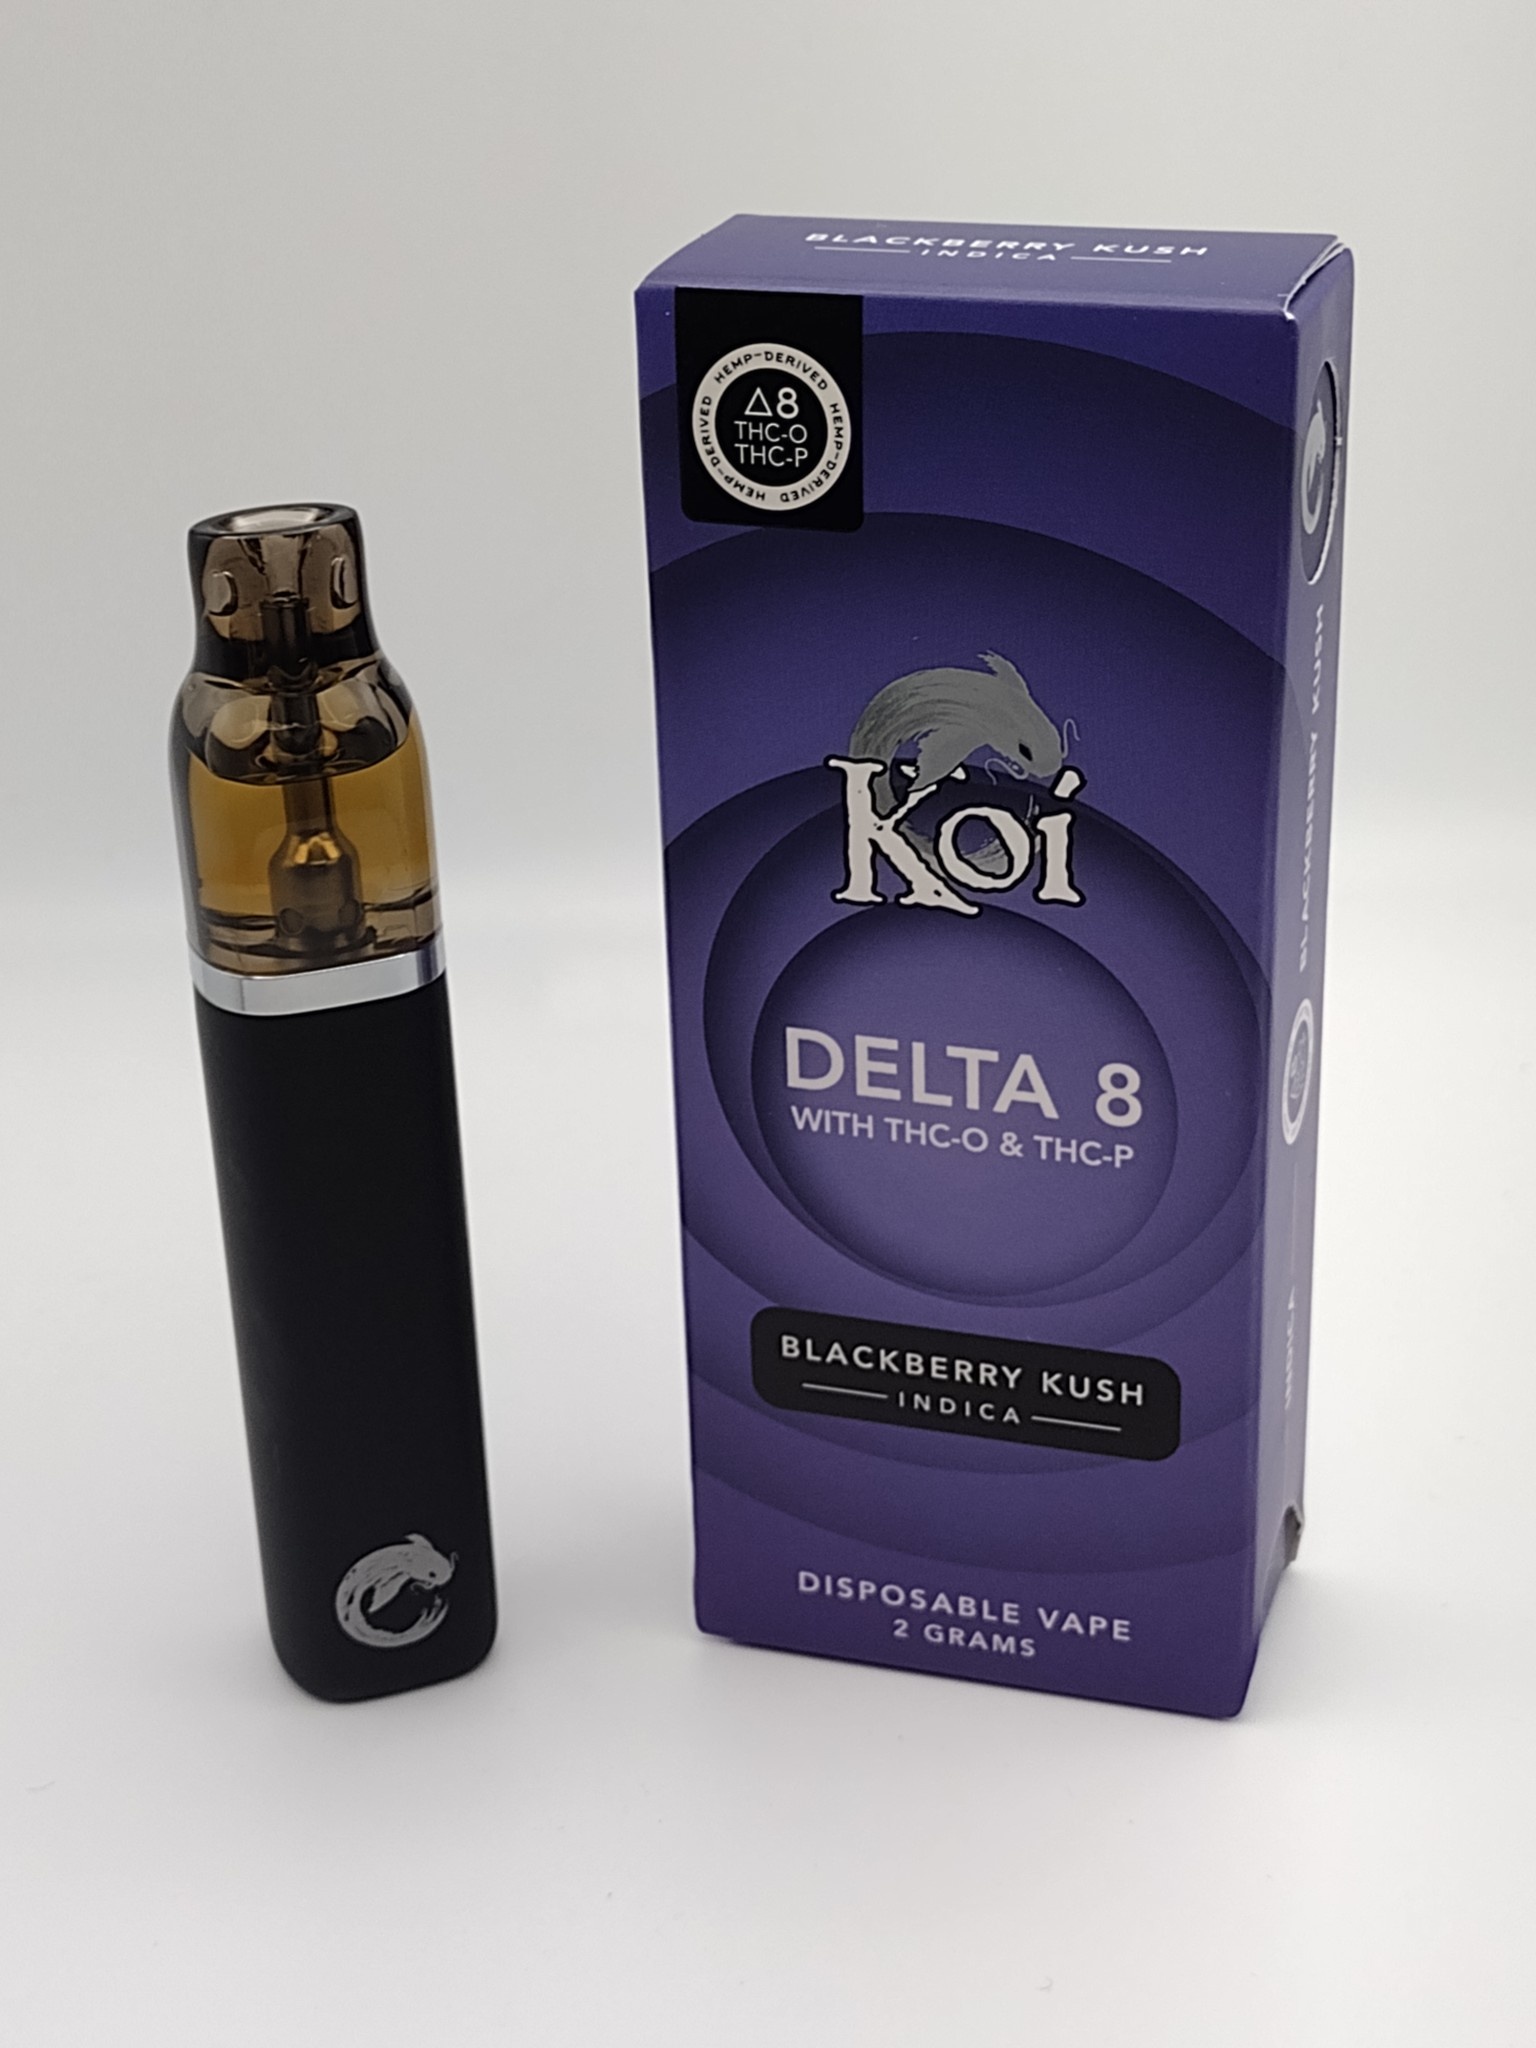 Koi D8+THC-O+THC-P Blend 2g Disposable Vape Blackberry Kush (Indica)